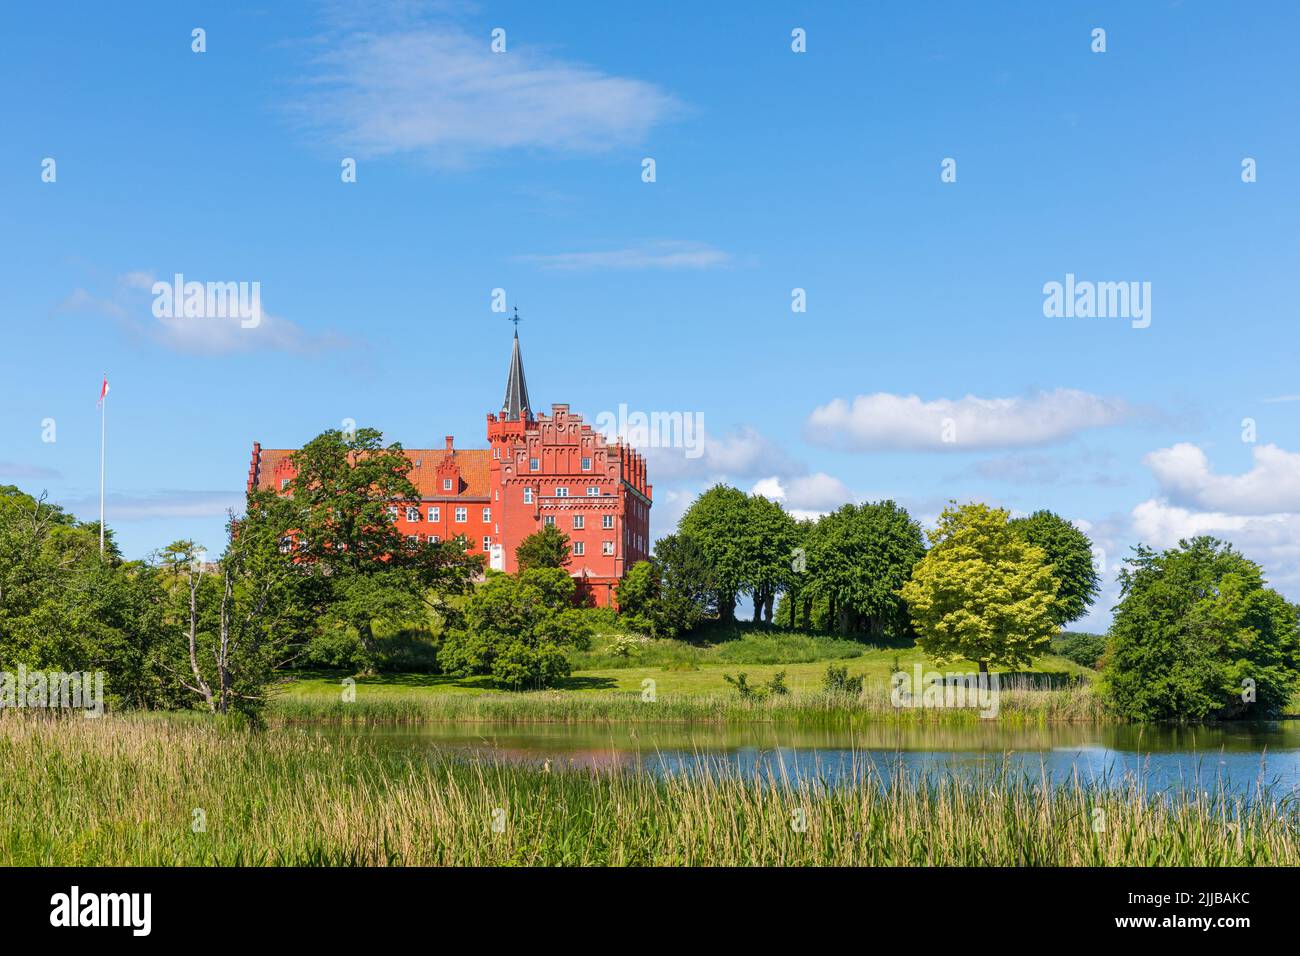 Château du 13th siècle et parl à Tranekær, île de Langeland, Danemark Banque D'Images